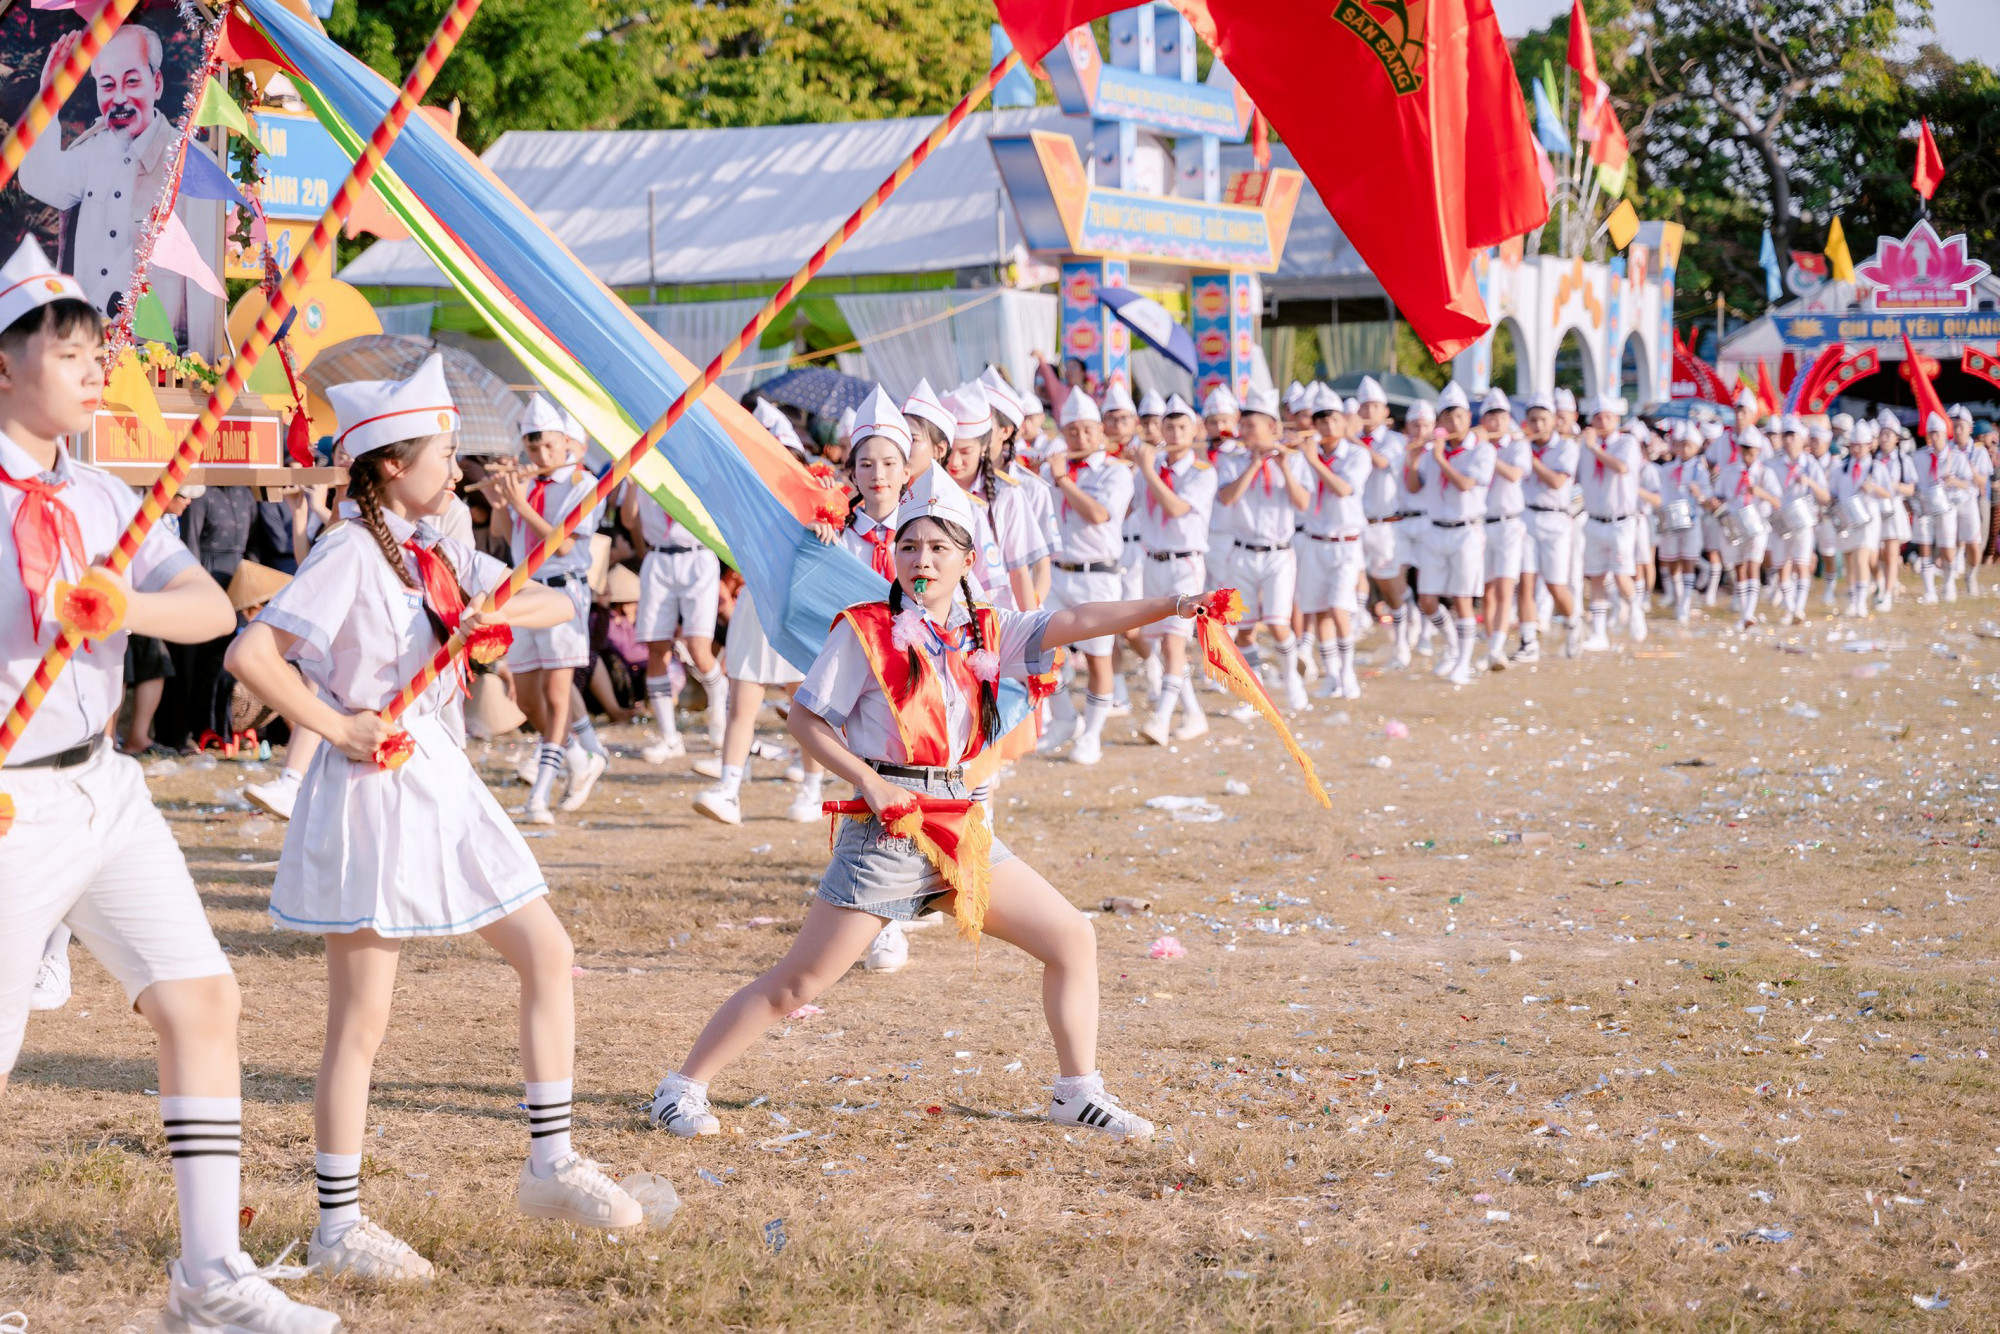 Kỷ niệm 78 năm Ngày Cách mạng Tháng 8, Quốc khánh 2/9 (1945-2023) nhiều địa phương trên địa bàn tỉnh Nghệ An tổ chức các hoạt động văn hóa, văn nghệ. Đặc biệt trong số này Hội thi nghi thức Đội - Ảnh: Đức Nguyễn